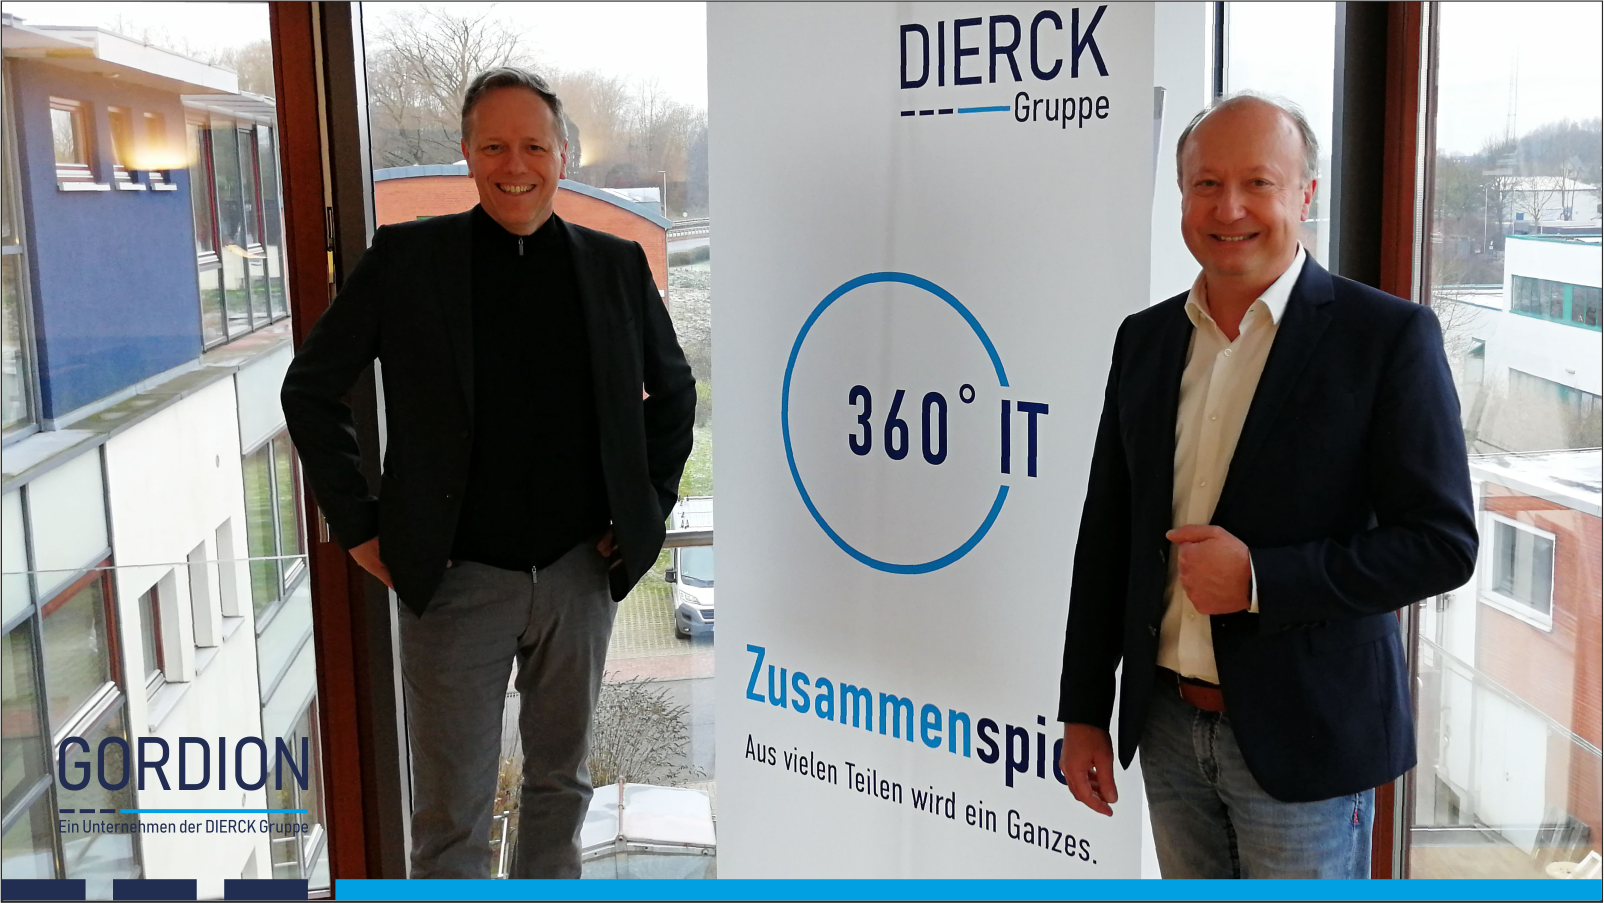 GORDION ist Teil der DIERCK Gruppe. Wolfgang Ehrk (CEO DIERCK-Gruppe) und Oliver Lindlar (MD GORDION, links) kennen sich seit 2007. Beide  sind seit 2008 u.a. auch in der IT-Union GmbH & Co. KG führend tätig.